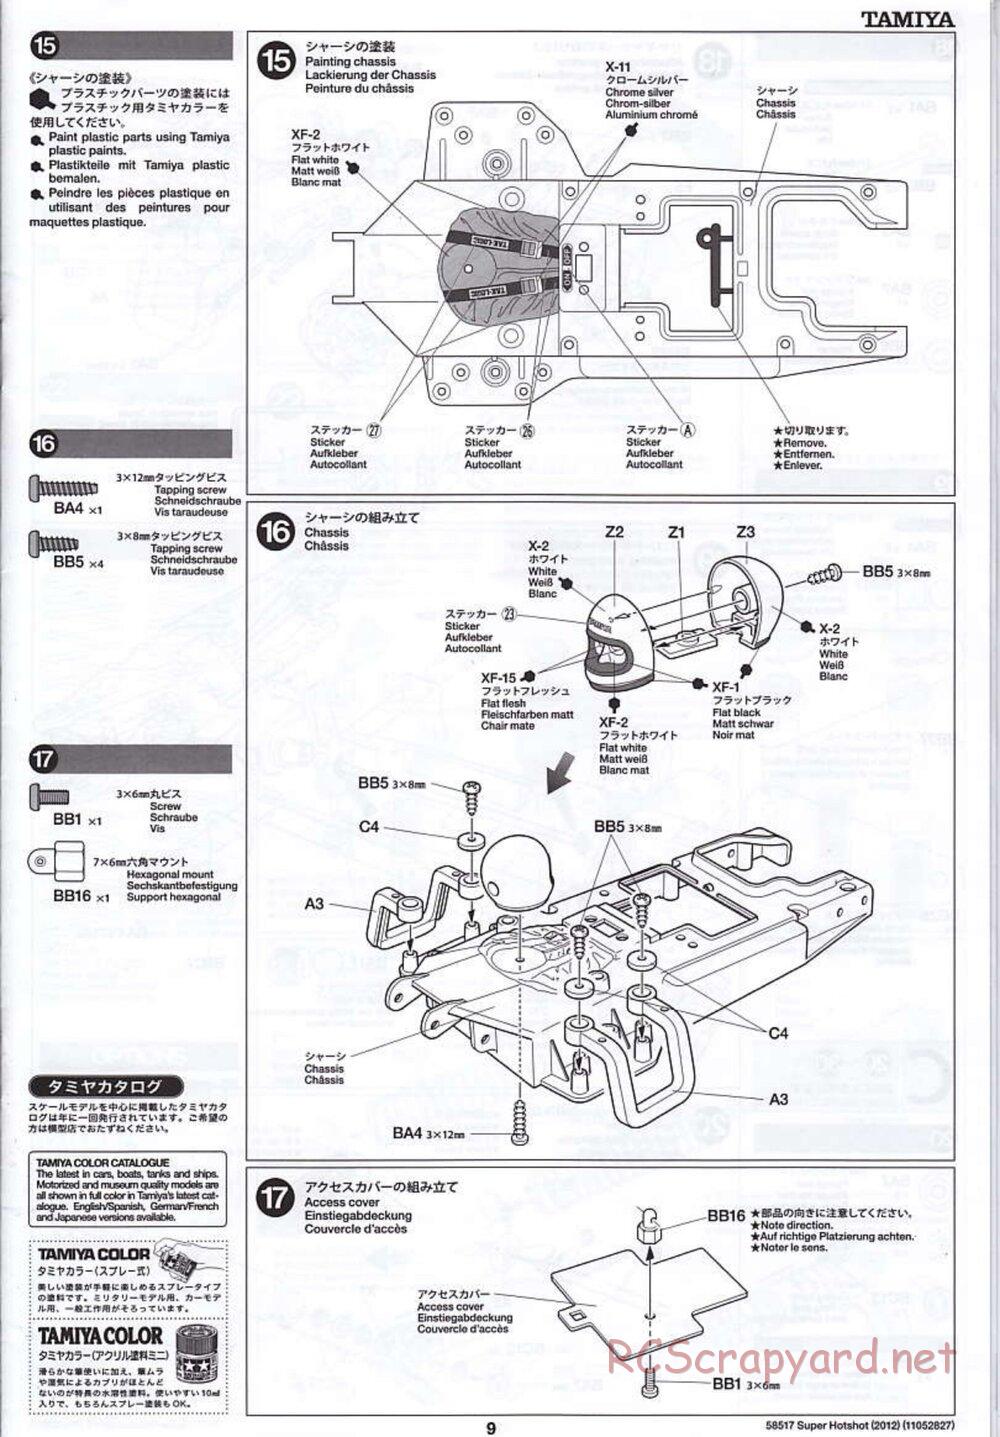 Tamiya - Super Hotshot 2012 - HS Chassis - Manual - Page 9